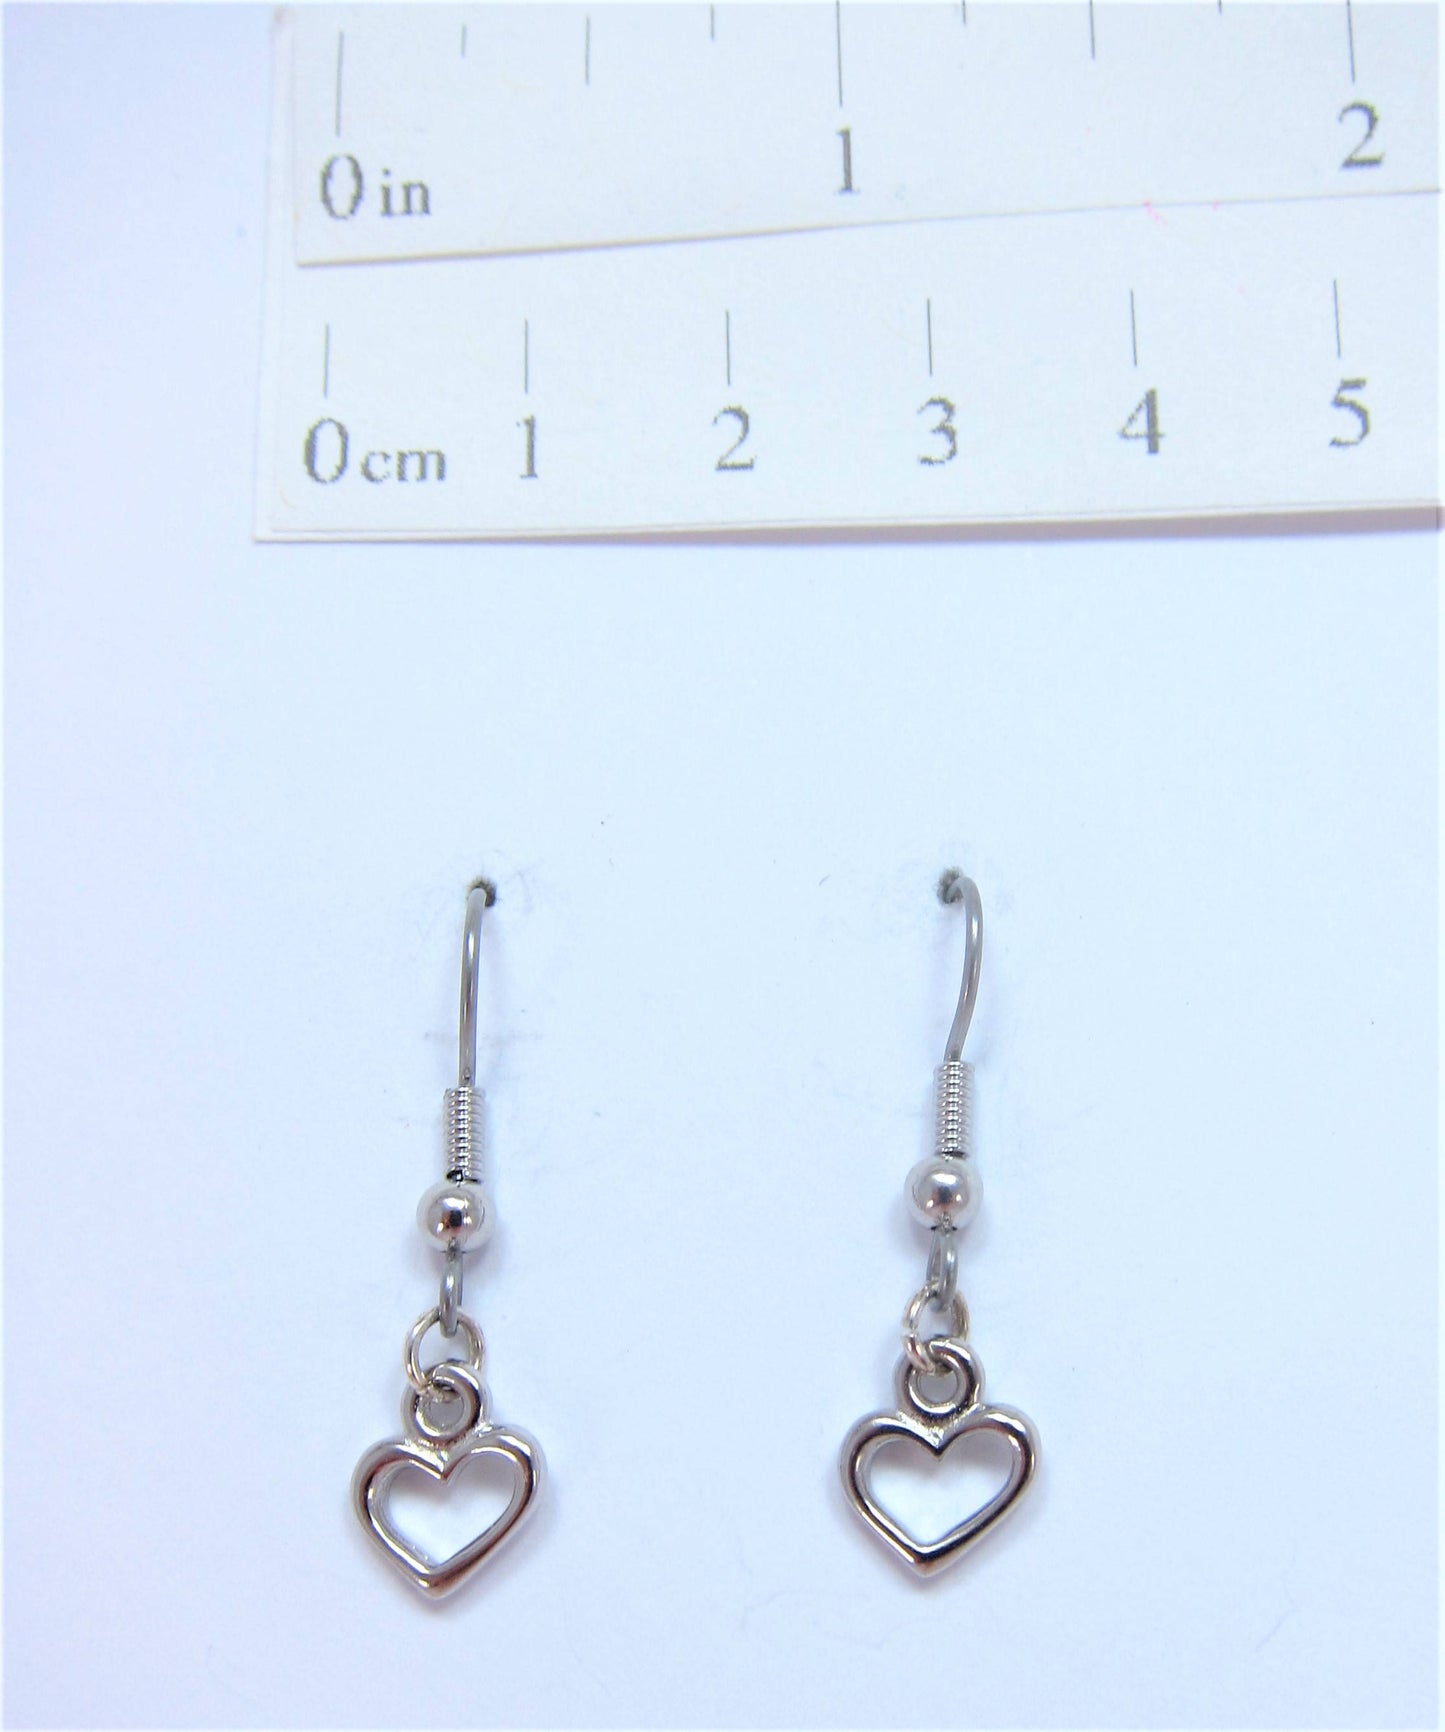 Charmed! Rhodium plate open heart earrings on hypoallergenic surgical steel hooks